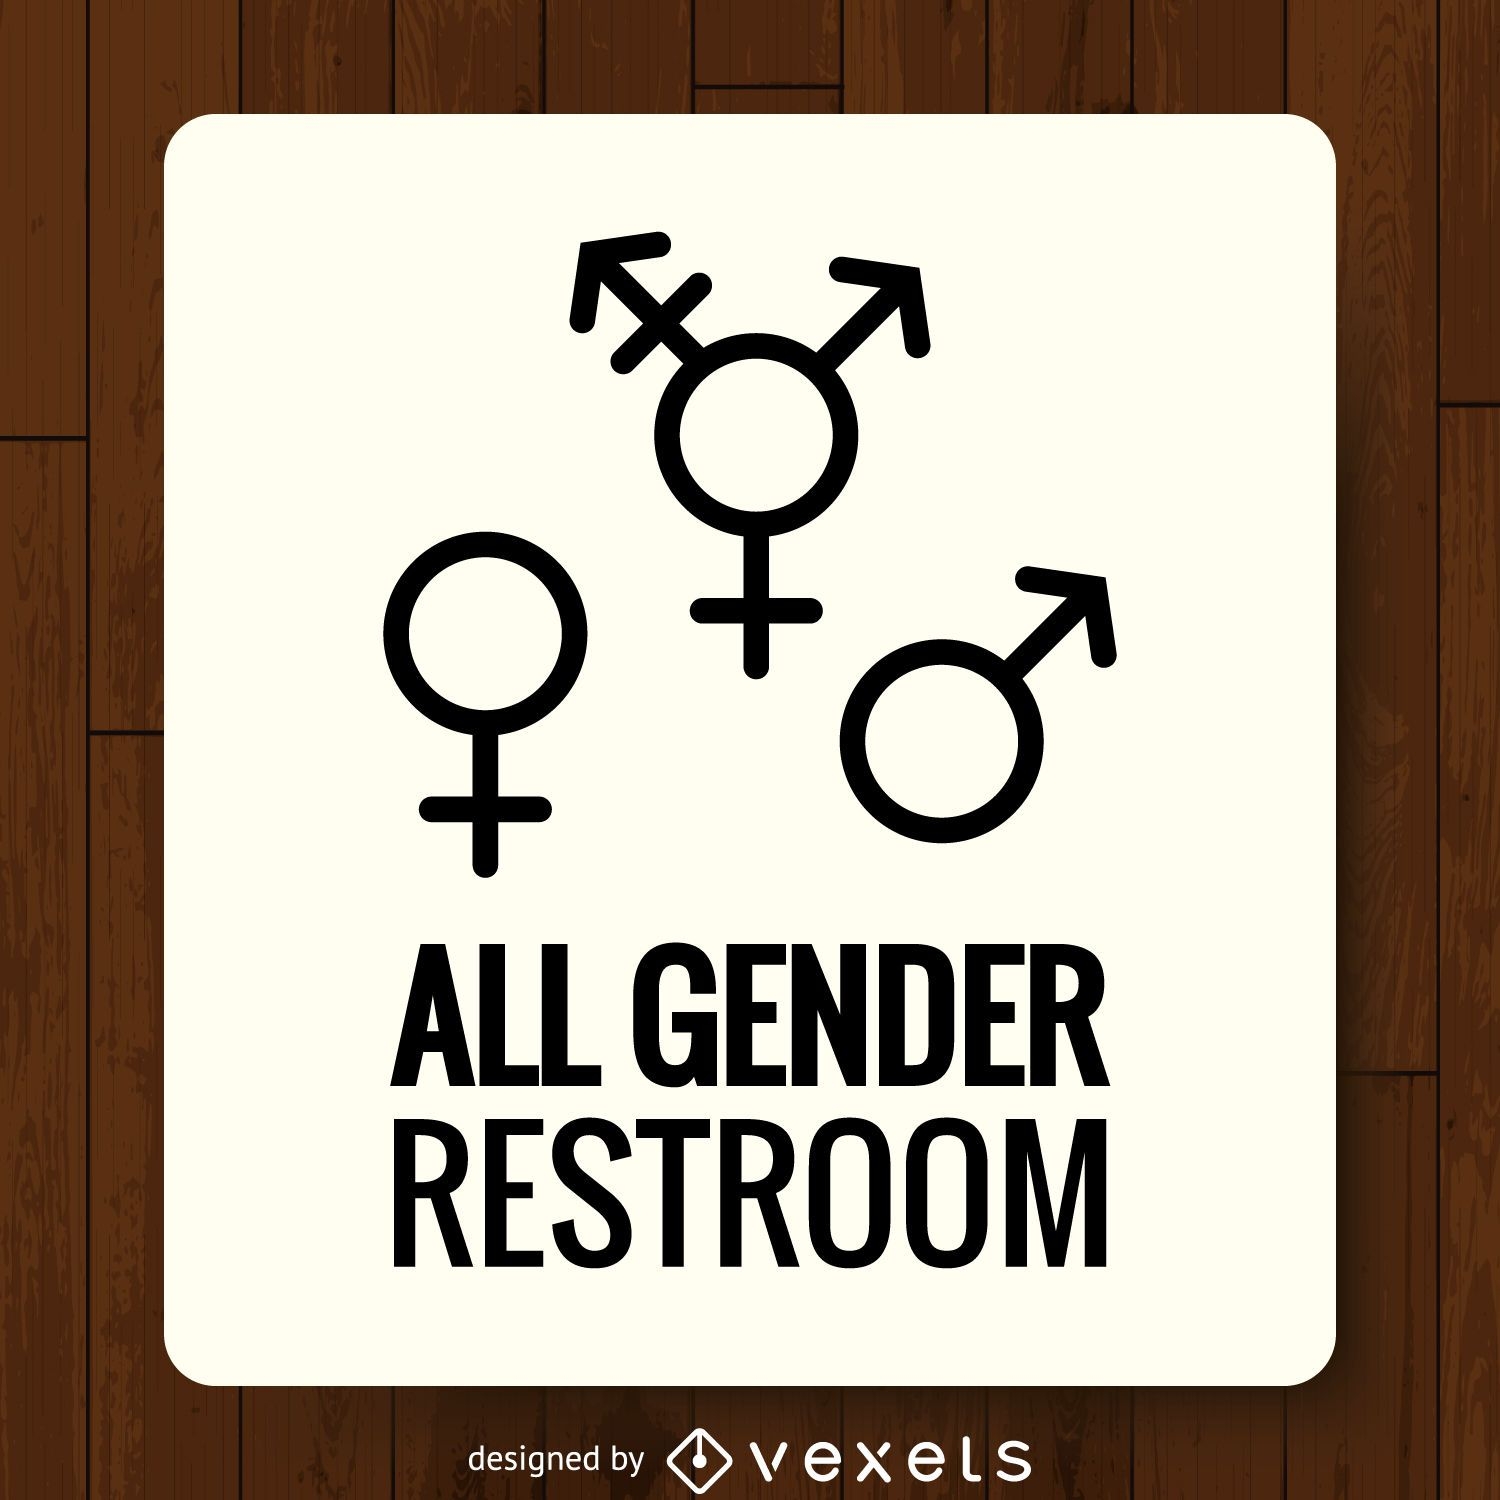 Etiqueta de baño de género LGBT